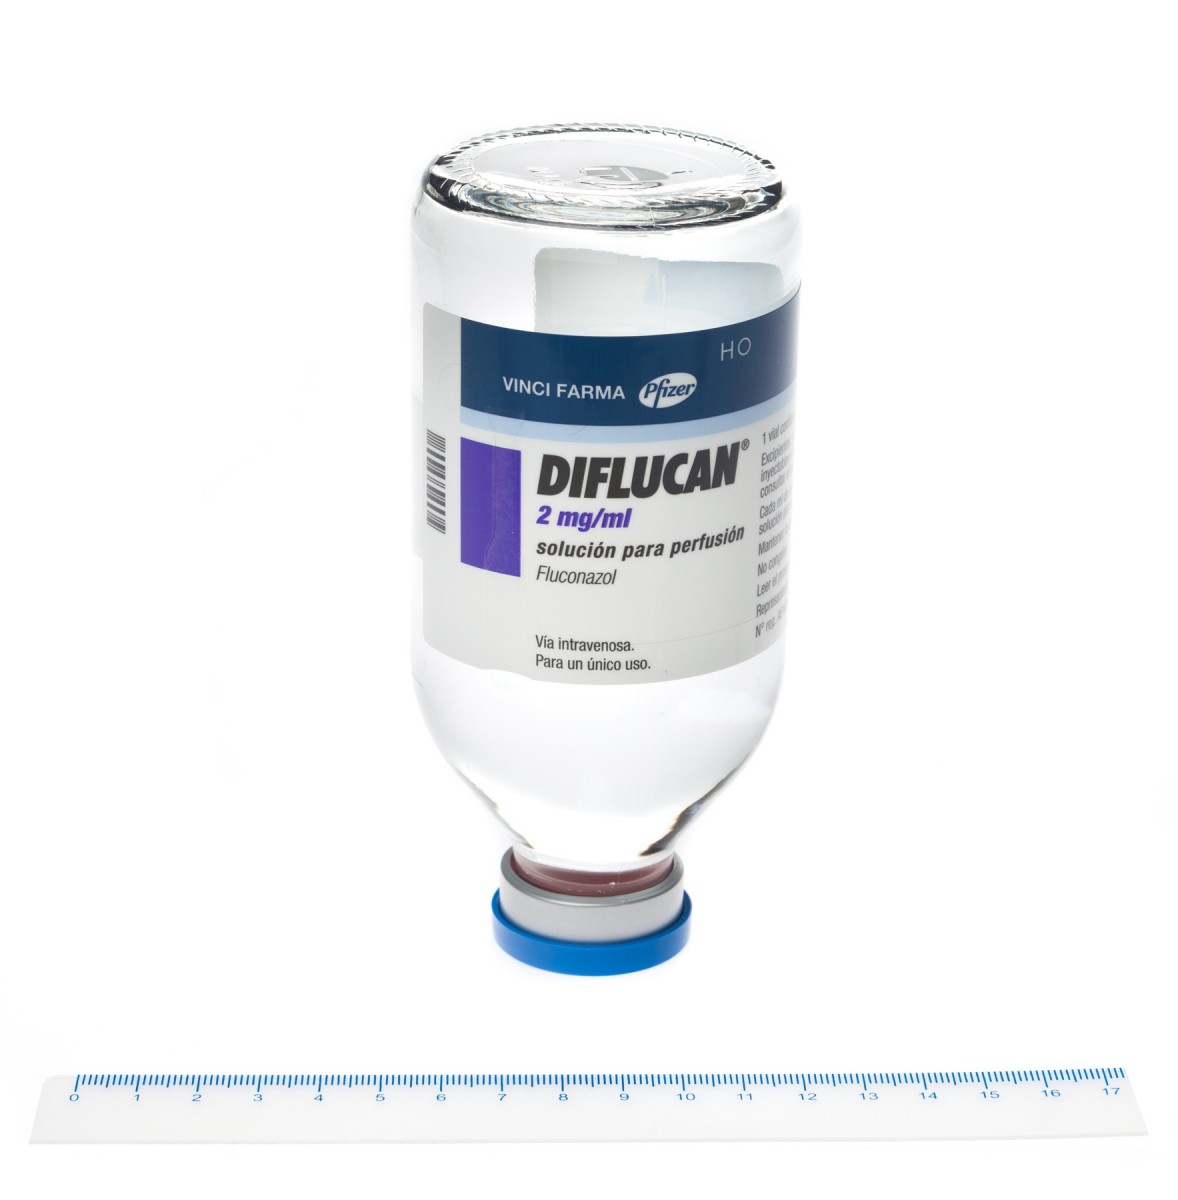 DIFLUCAN 2 mg/ml SOLUCION PARA PERFUSION ,  1 vial de 100 ml fotografía de la forma farmacéutica.